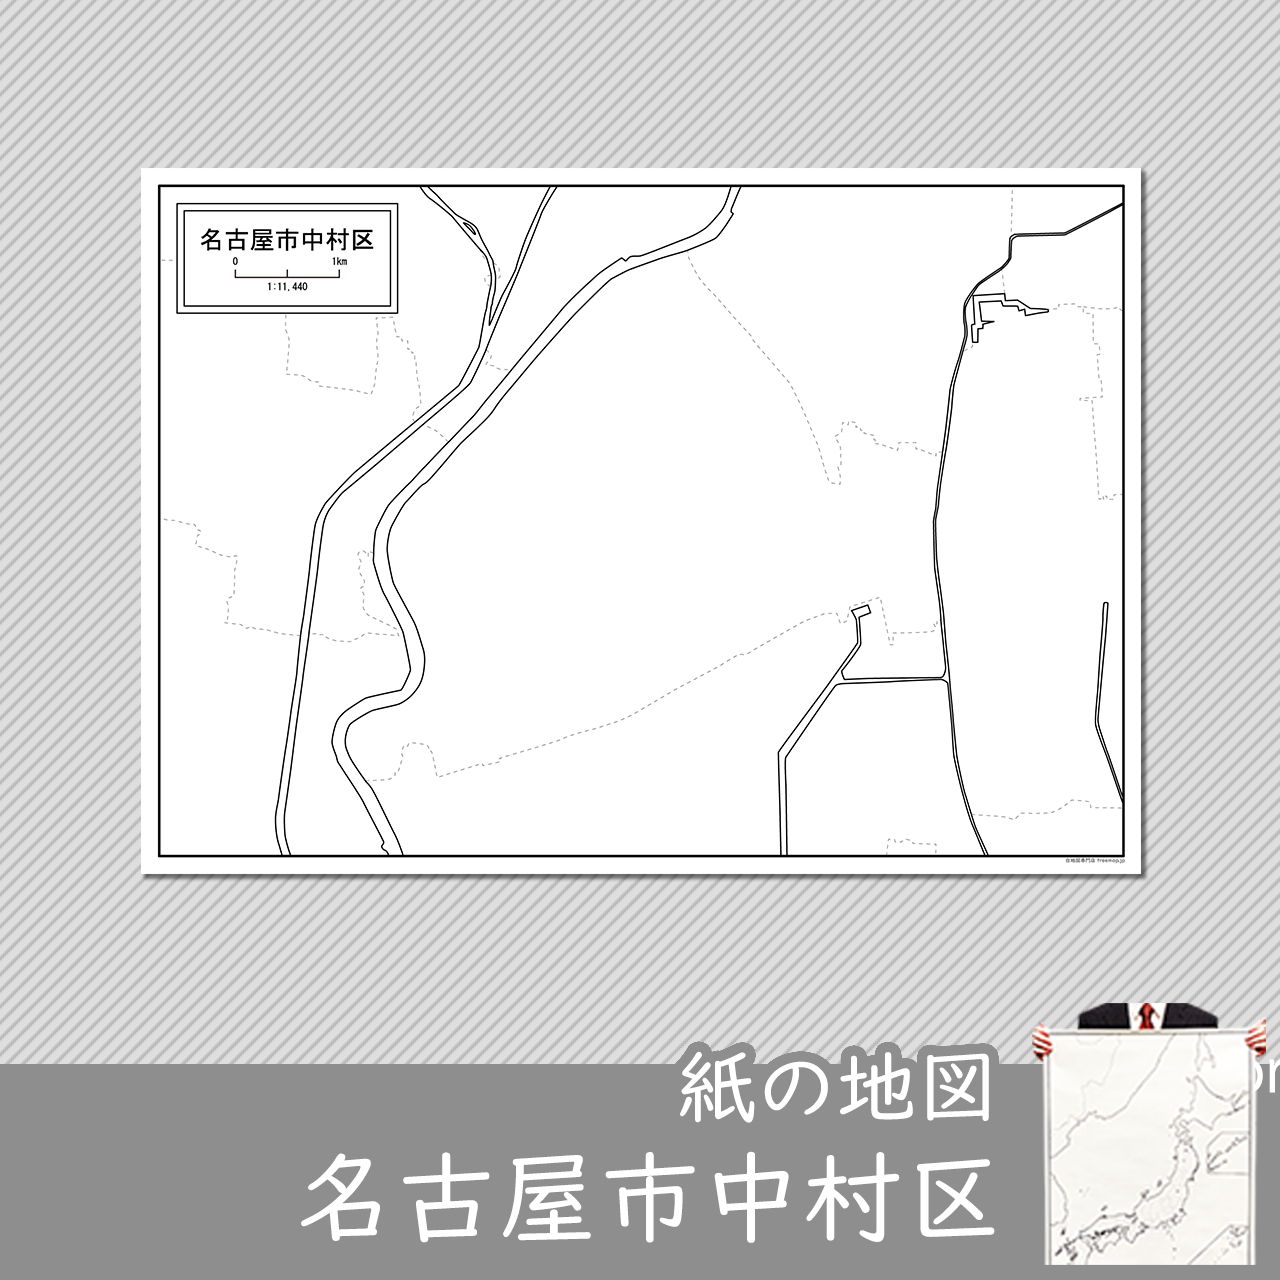 名古屋市中村区の紙の白地図のサムネイル